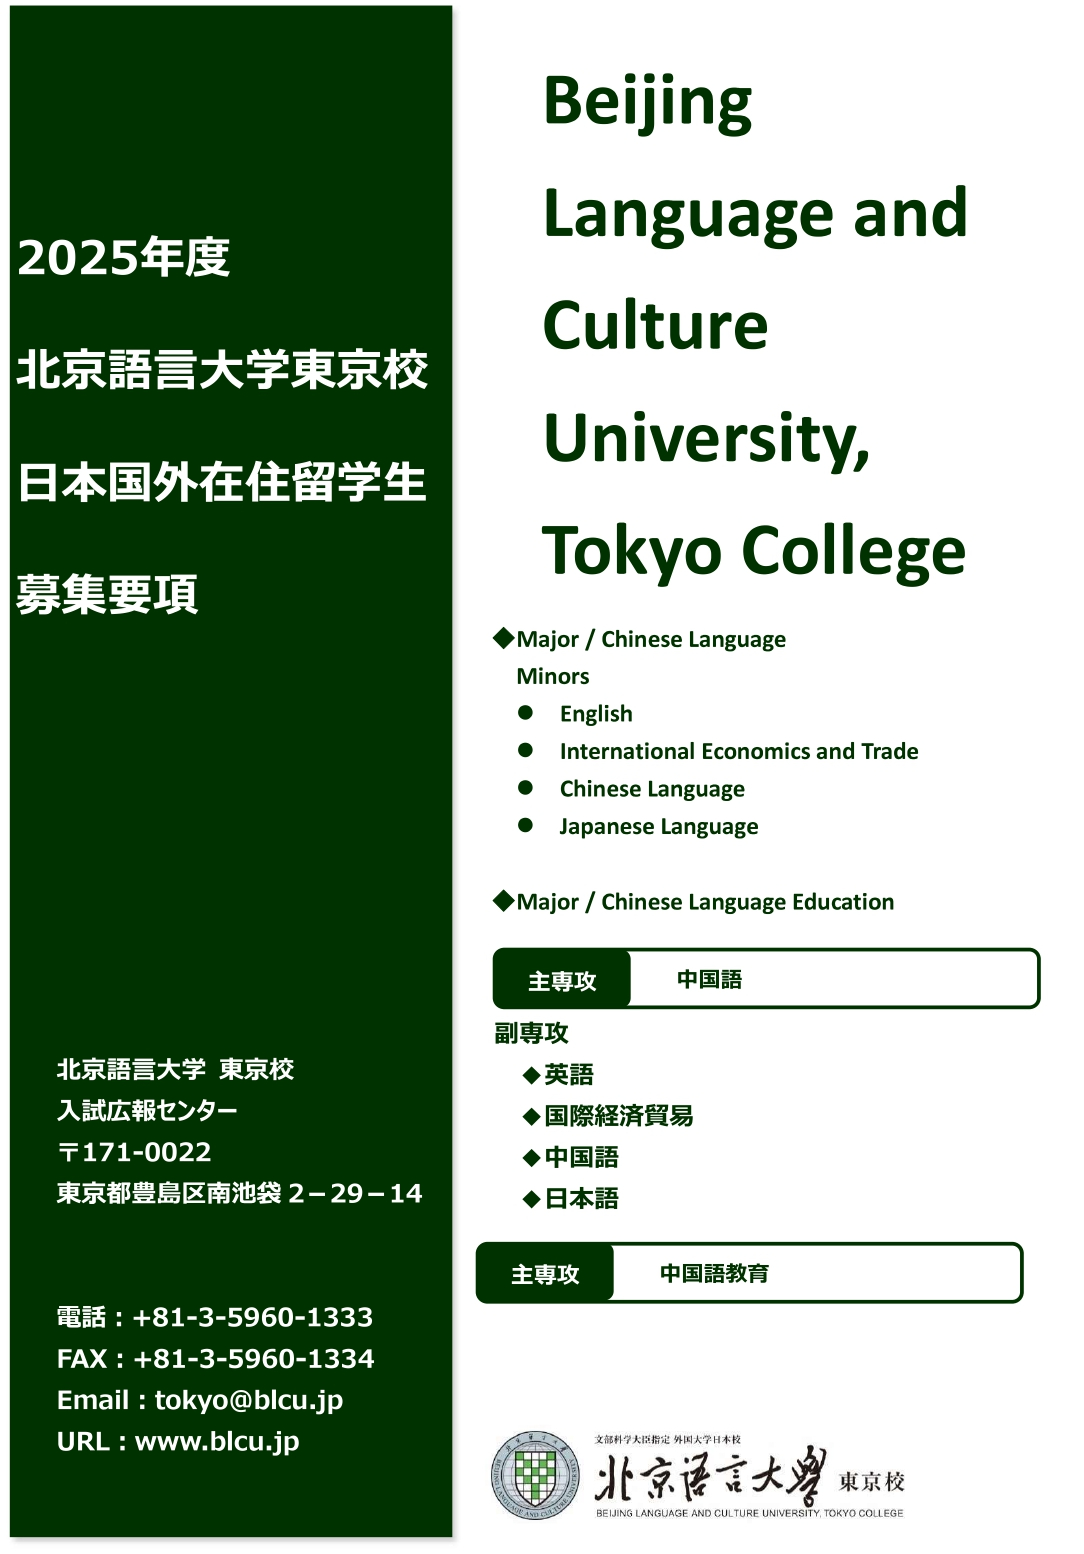 日本国外在住者向け募集要項（2025年入学者用）